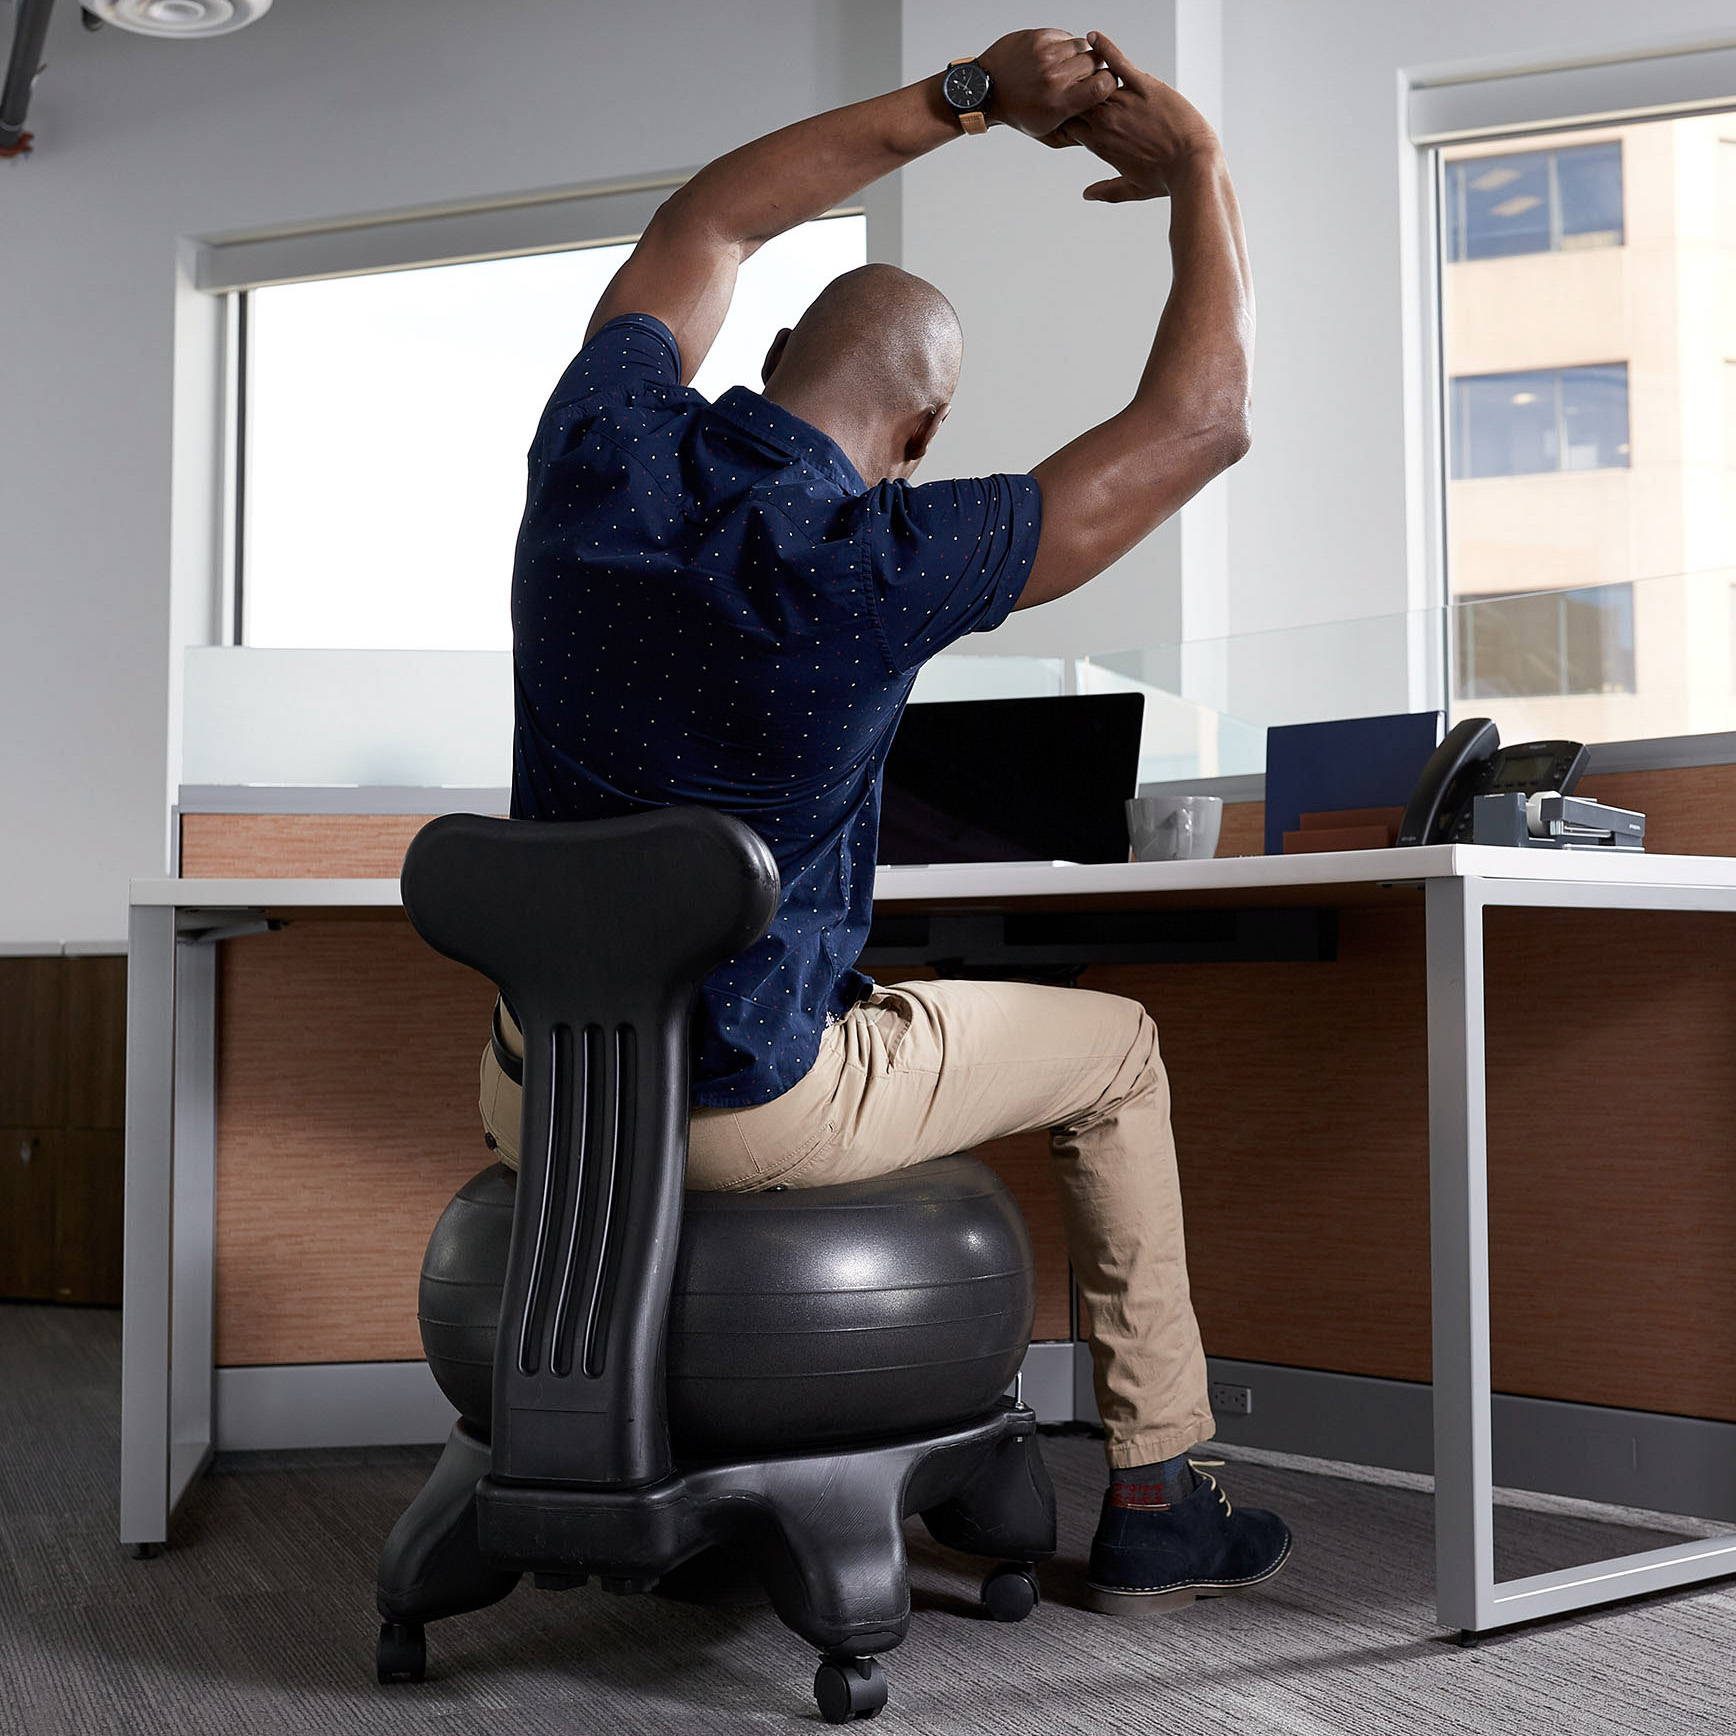 Classic Balance Ball Chair Gaiam, Yoga Ball For Desk Chair